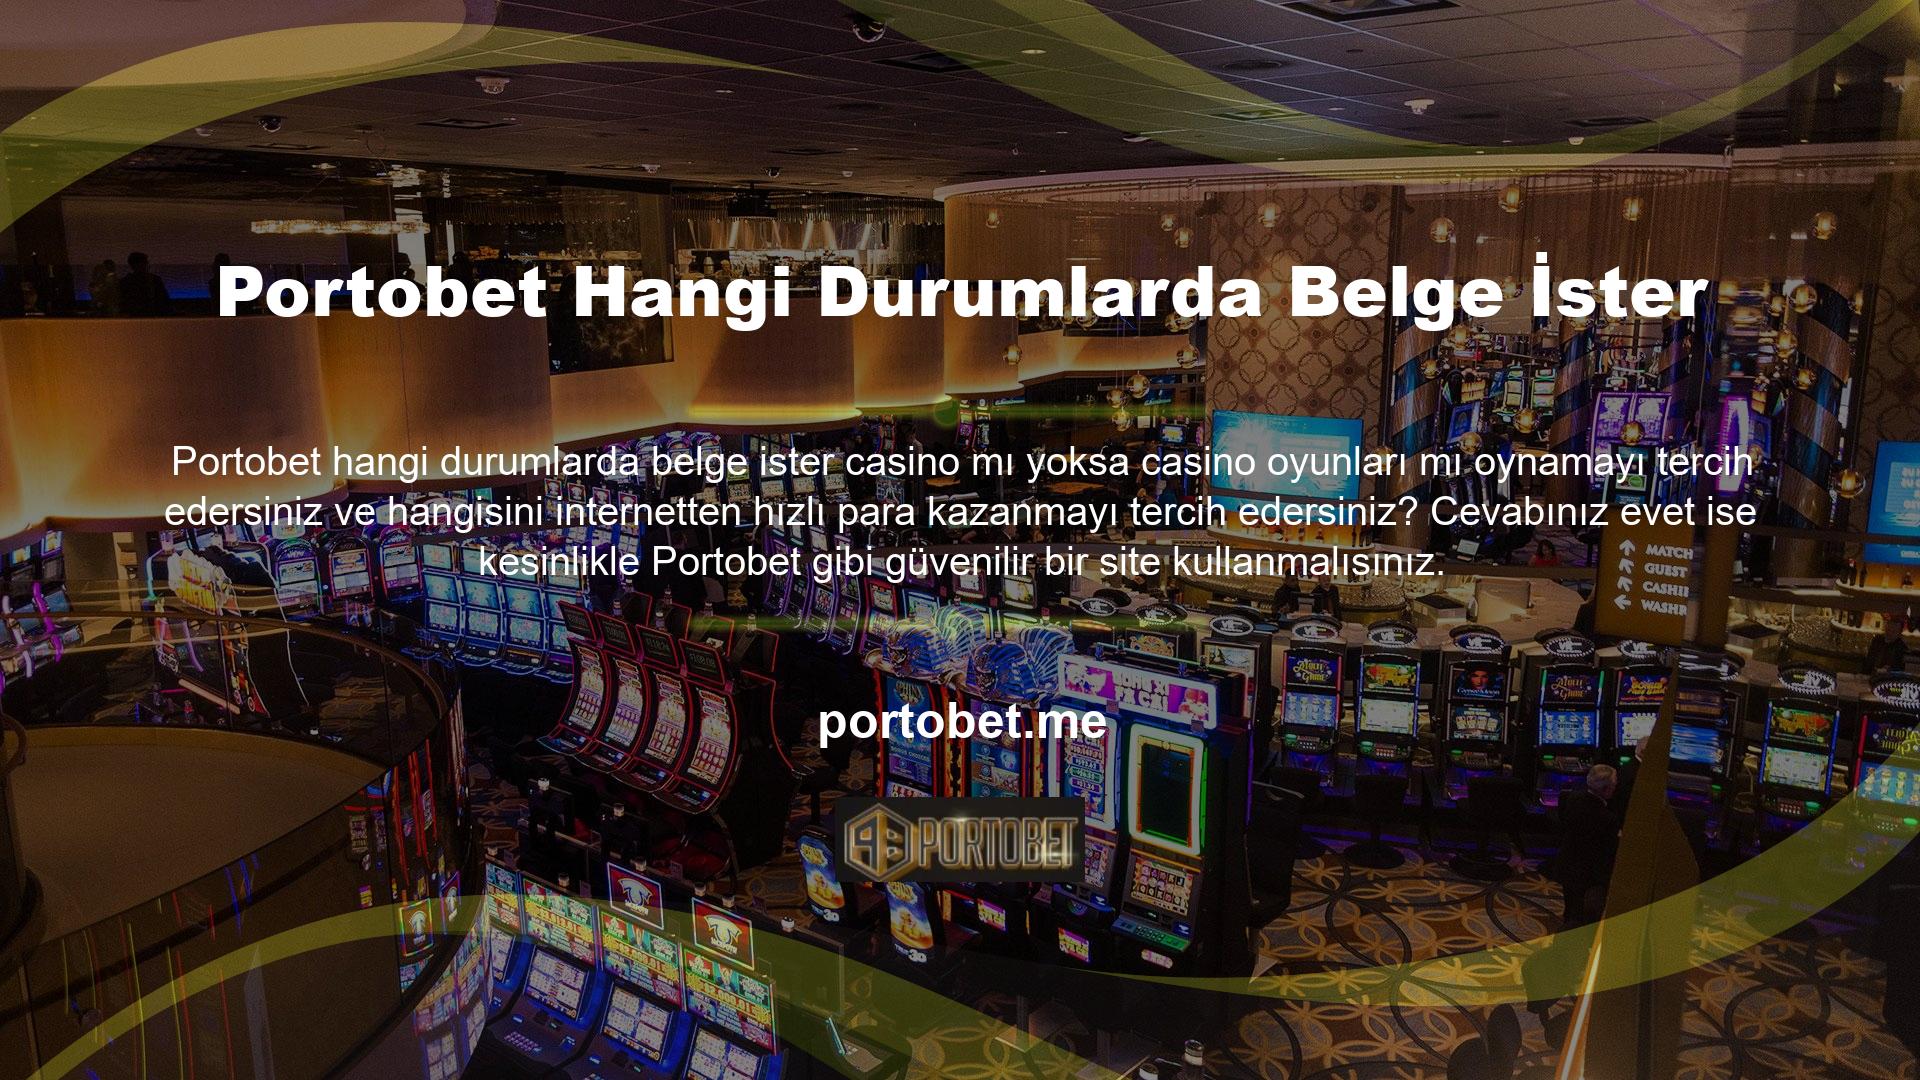 Portobet, her türlü arzunuzu tatmin edecek çok çeşitli casino oyunlarına sahiptir